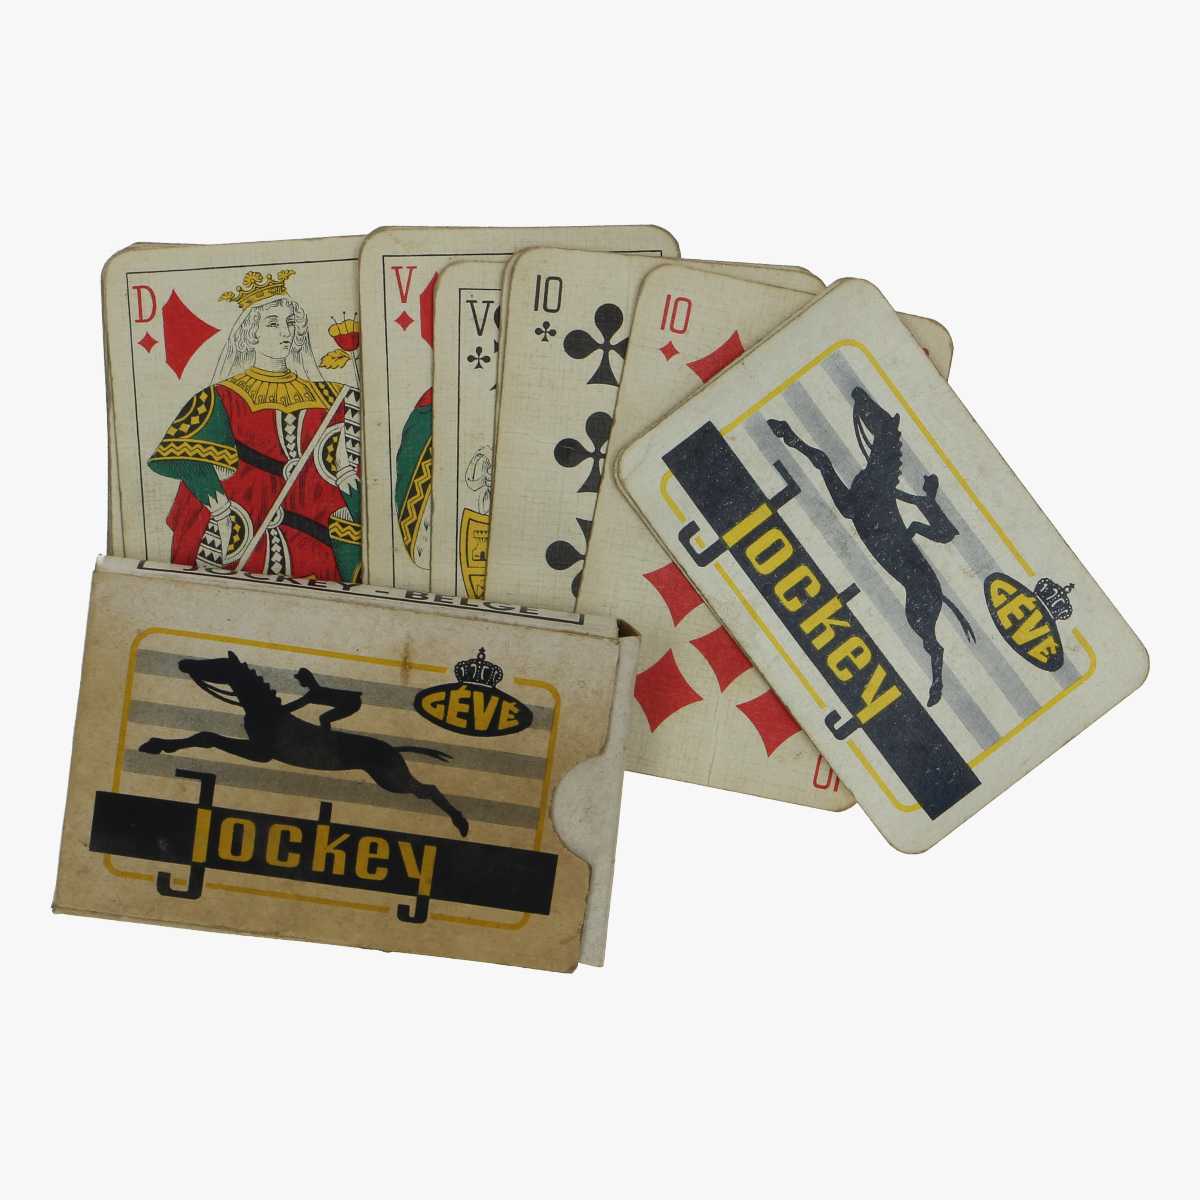 Afbeeldingen van oud spel kaarten jockey-Belge